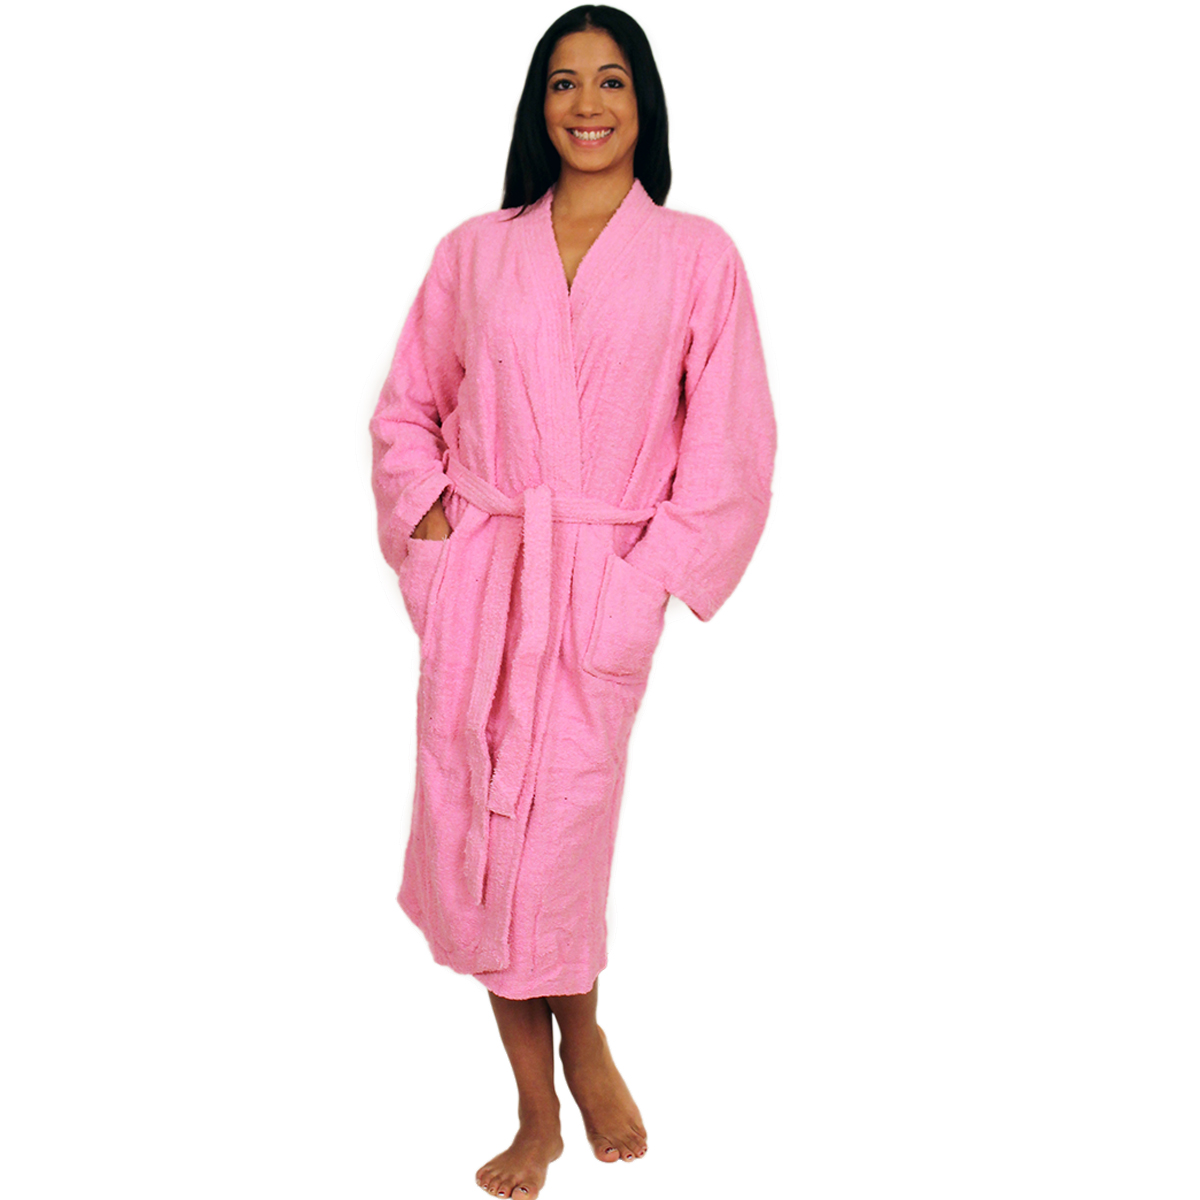 NDK New York Terry Cloth Kimono Bath Robe Unisex 100% Cotton